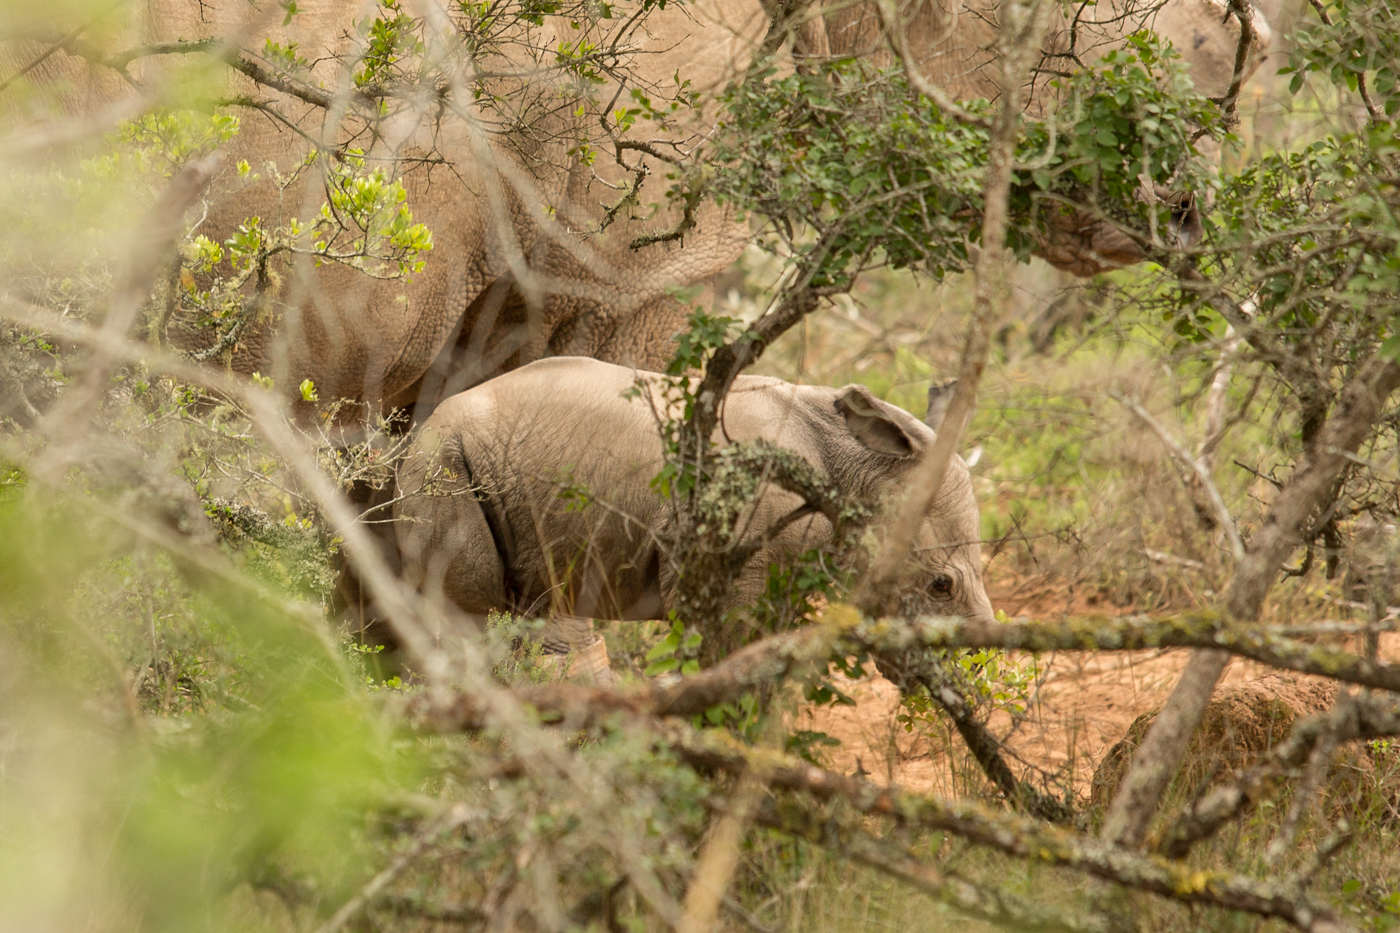 Rhino Thembi Gives Birth to New Baby Rhino